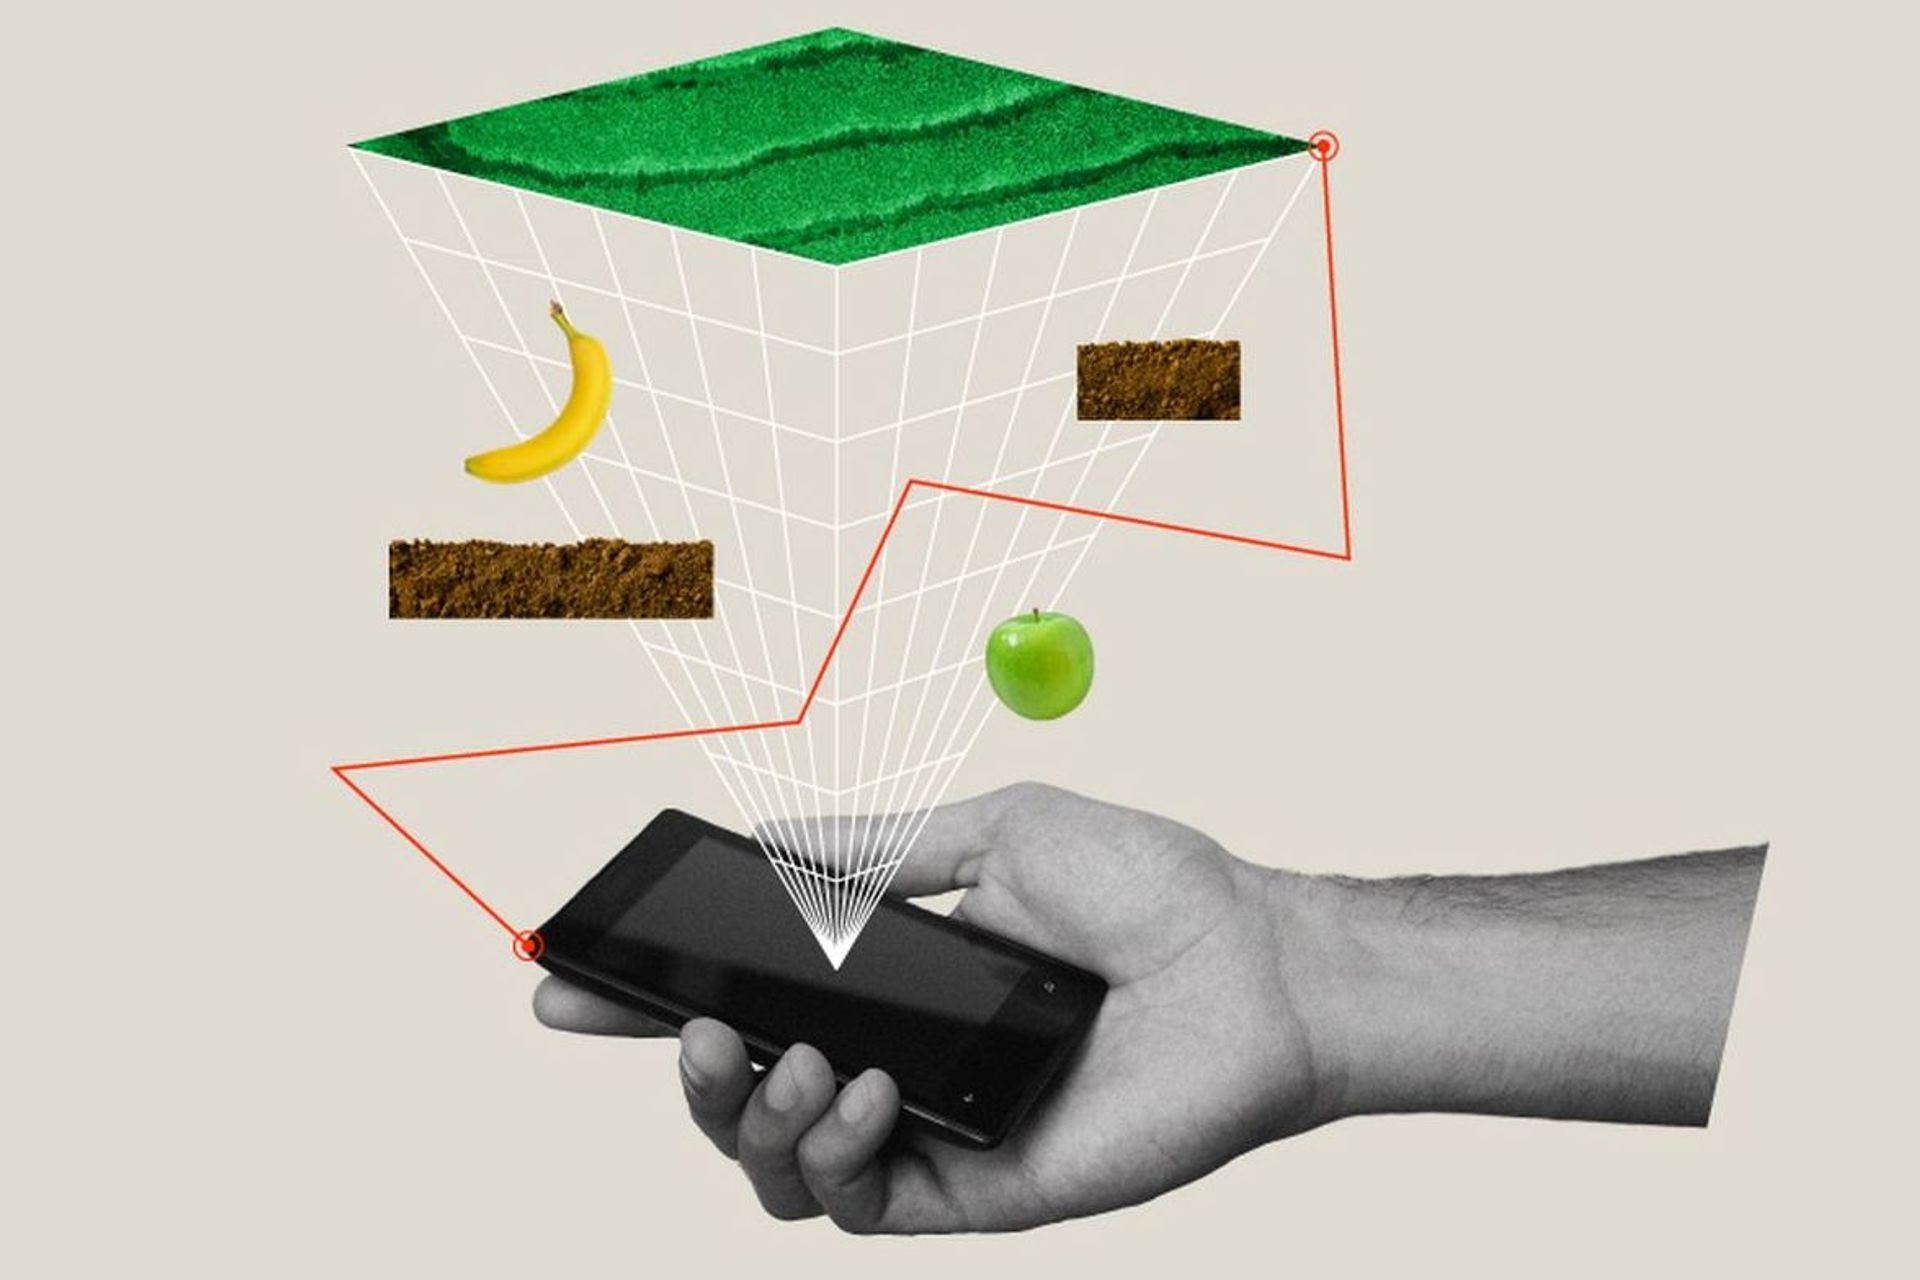 En illustration av hjälpen av en schweizisk app för att konservera mat